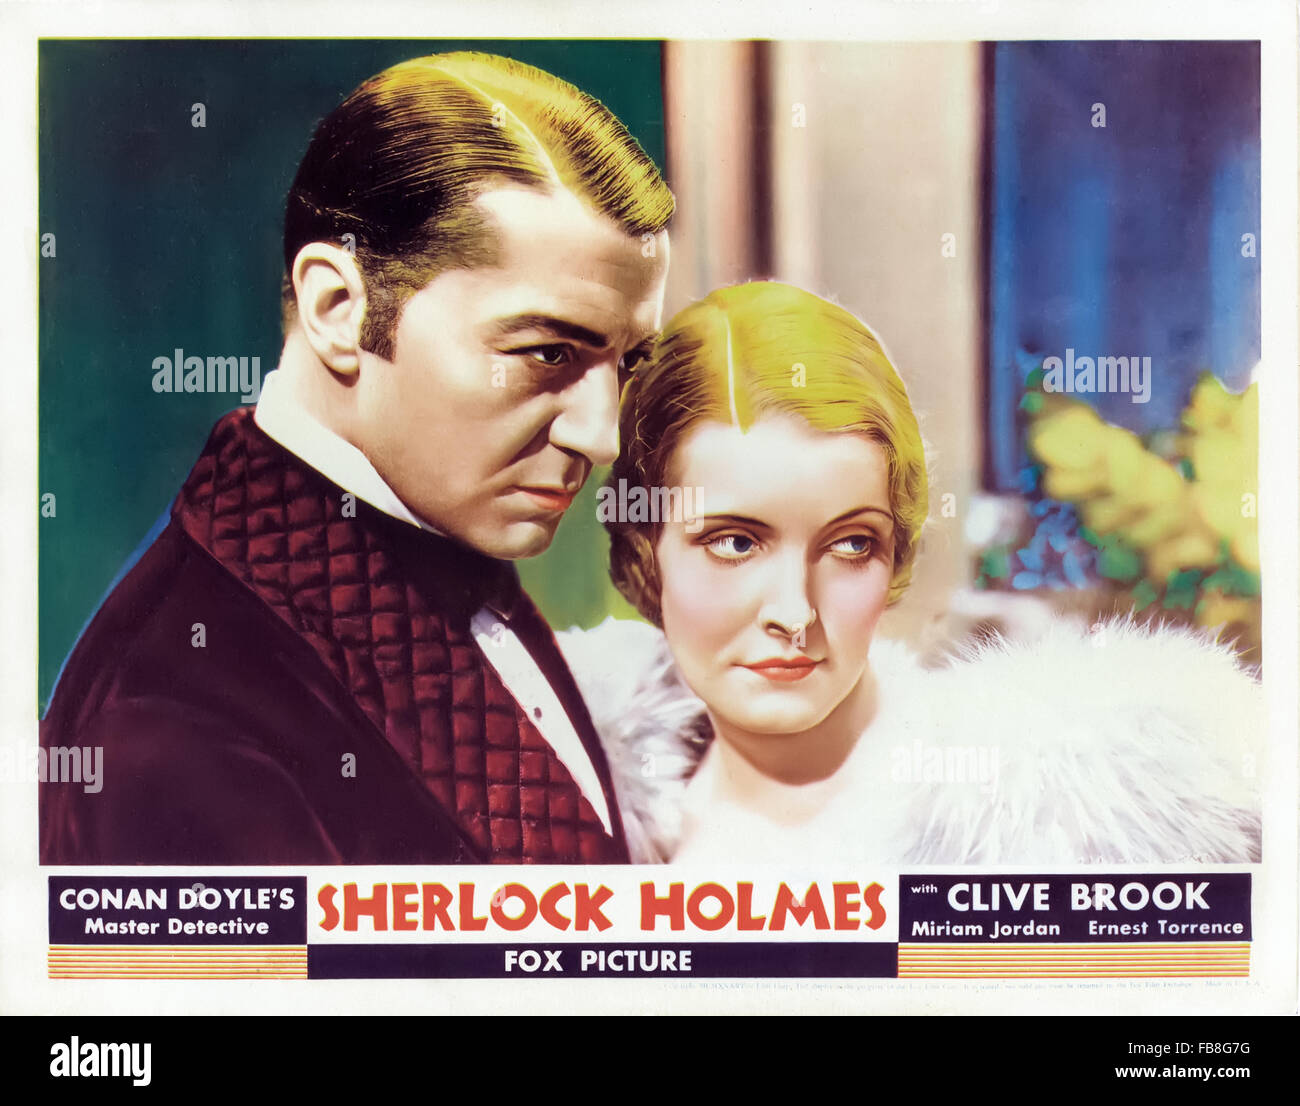 Ancora da 'SSherlock Holmes' 1932 film diretto da William K. Howard e interpretato da Clive Brook (Holmes) e Miriam Giordano (Alice Faulkner). Fotografia della lobby originale card. Foto Stock